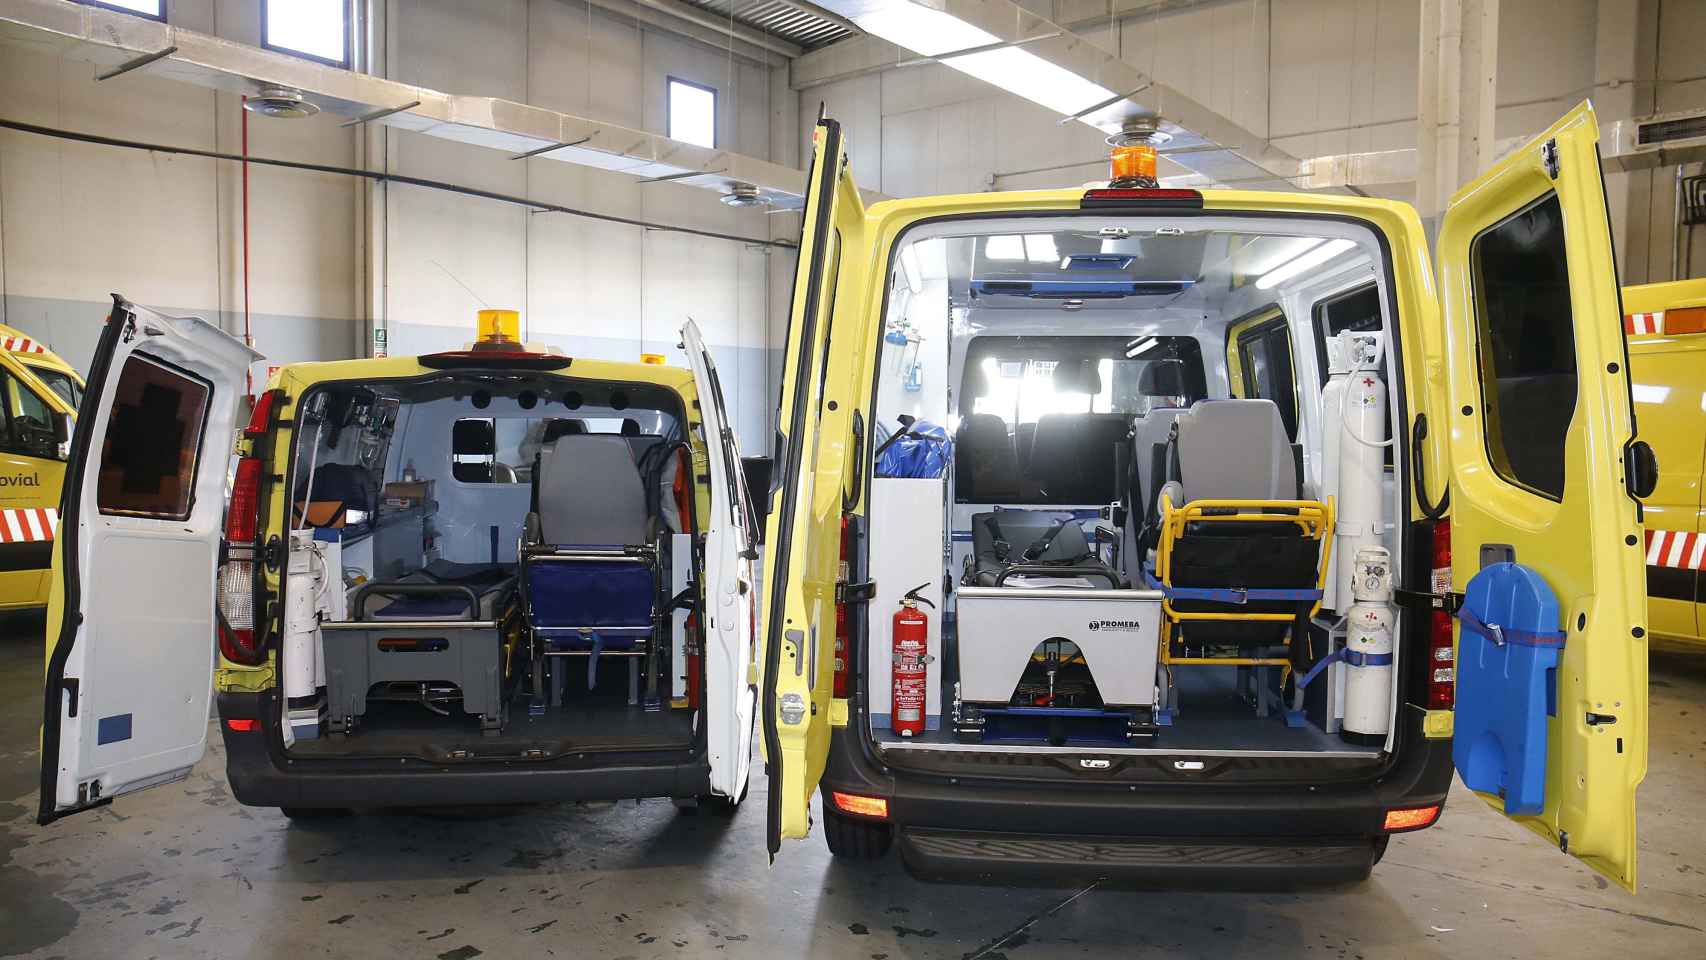 Ambulancias del Summa como las que se desplazaron para atender al joven herido de gravedad en una reyerta / MADRID.ORG